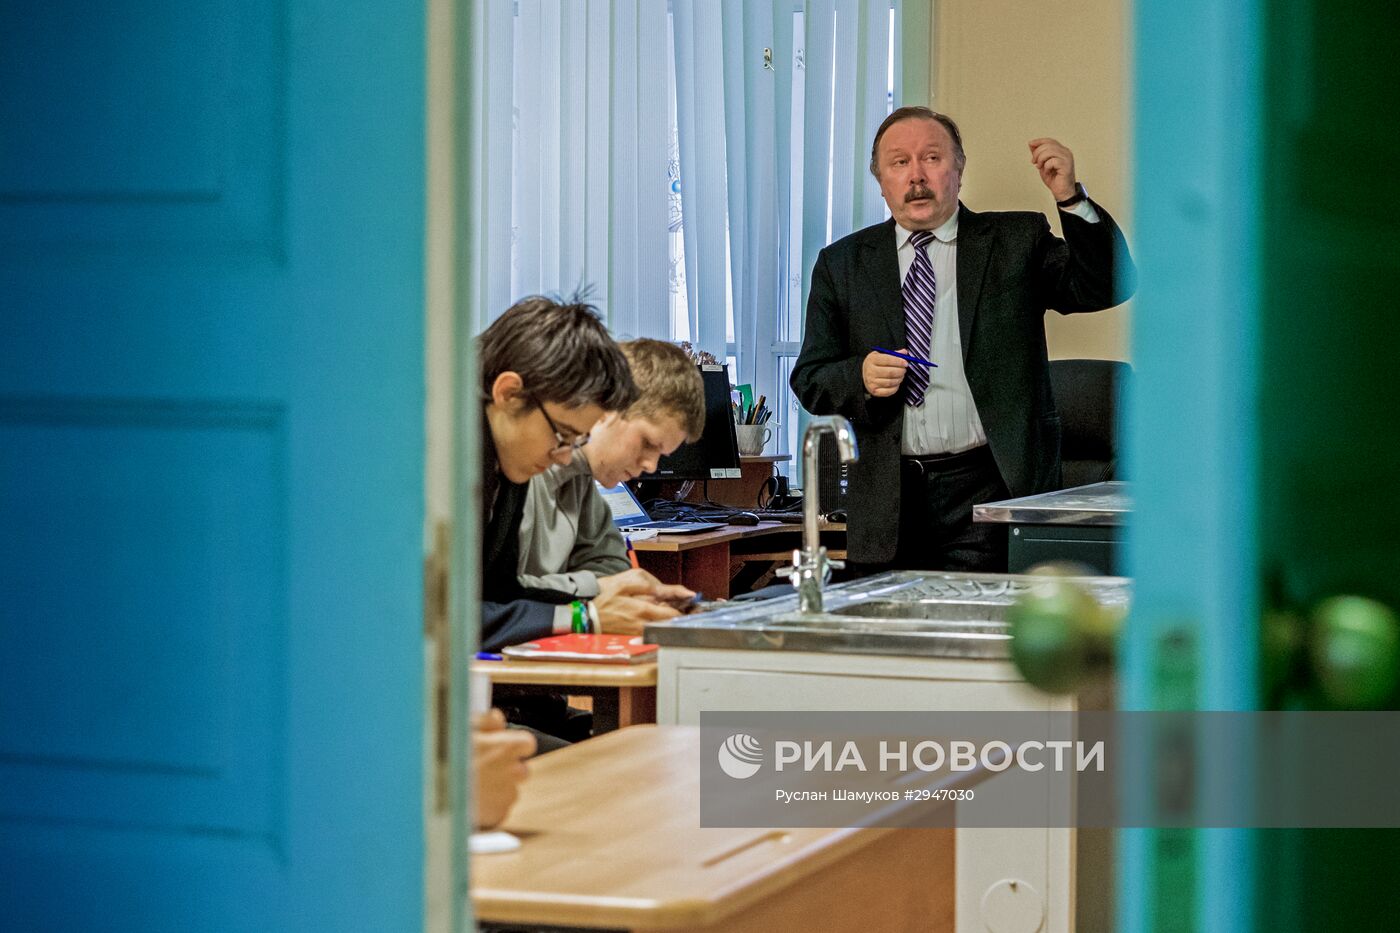 Учитель химии Петербургского лицея № 239 Борис Миссюль